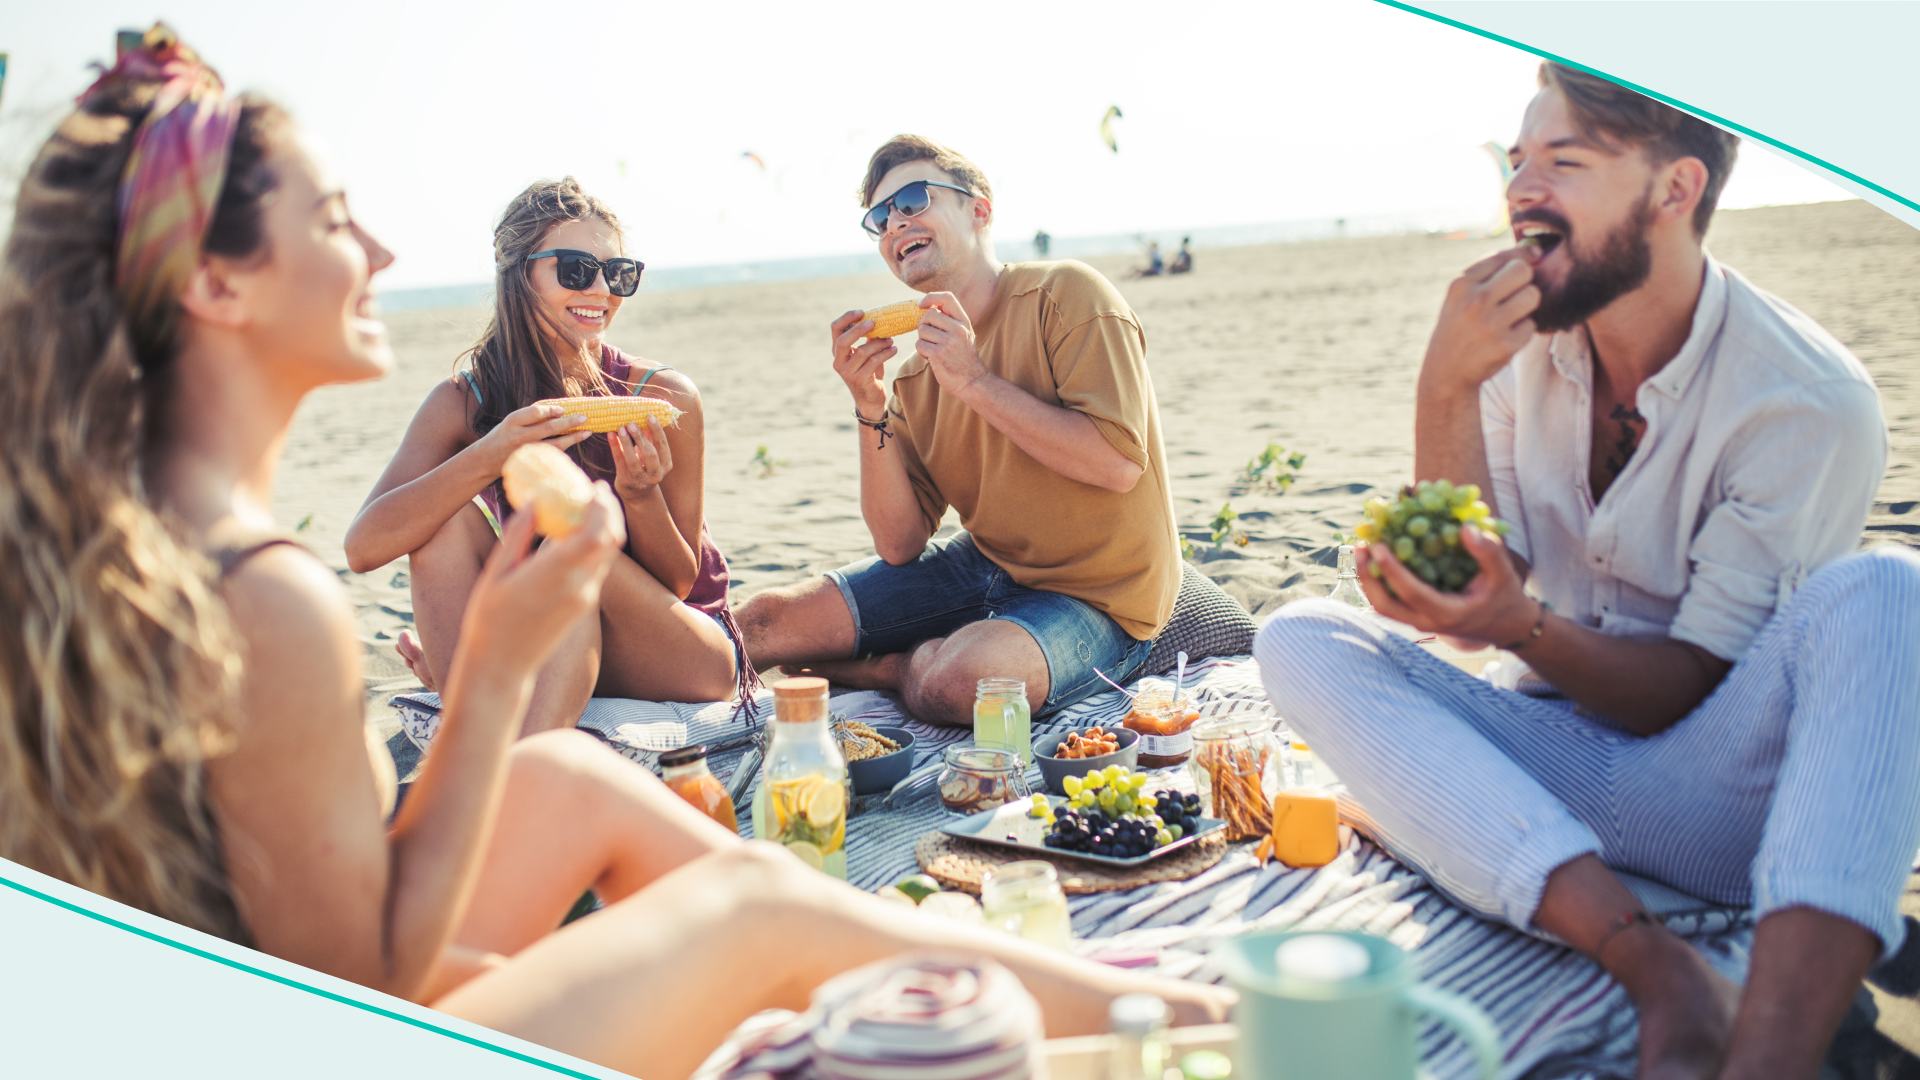 A group of friends enjoying a beach picnic